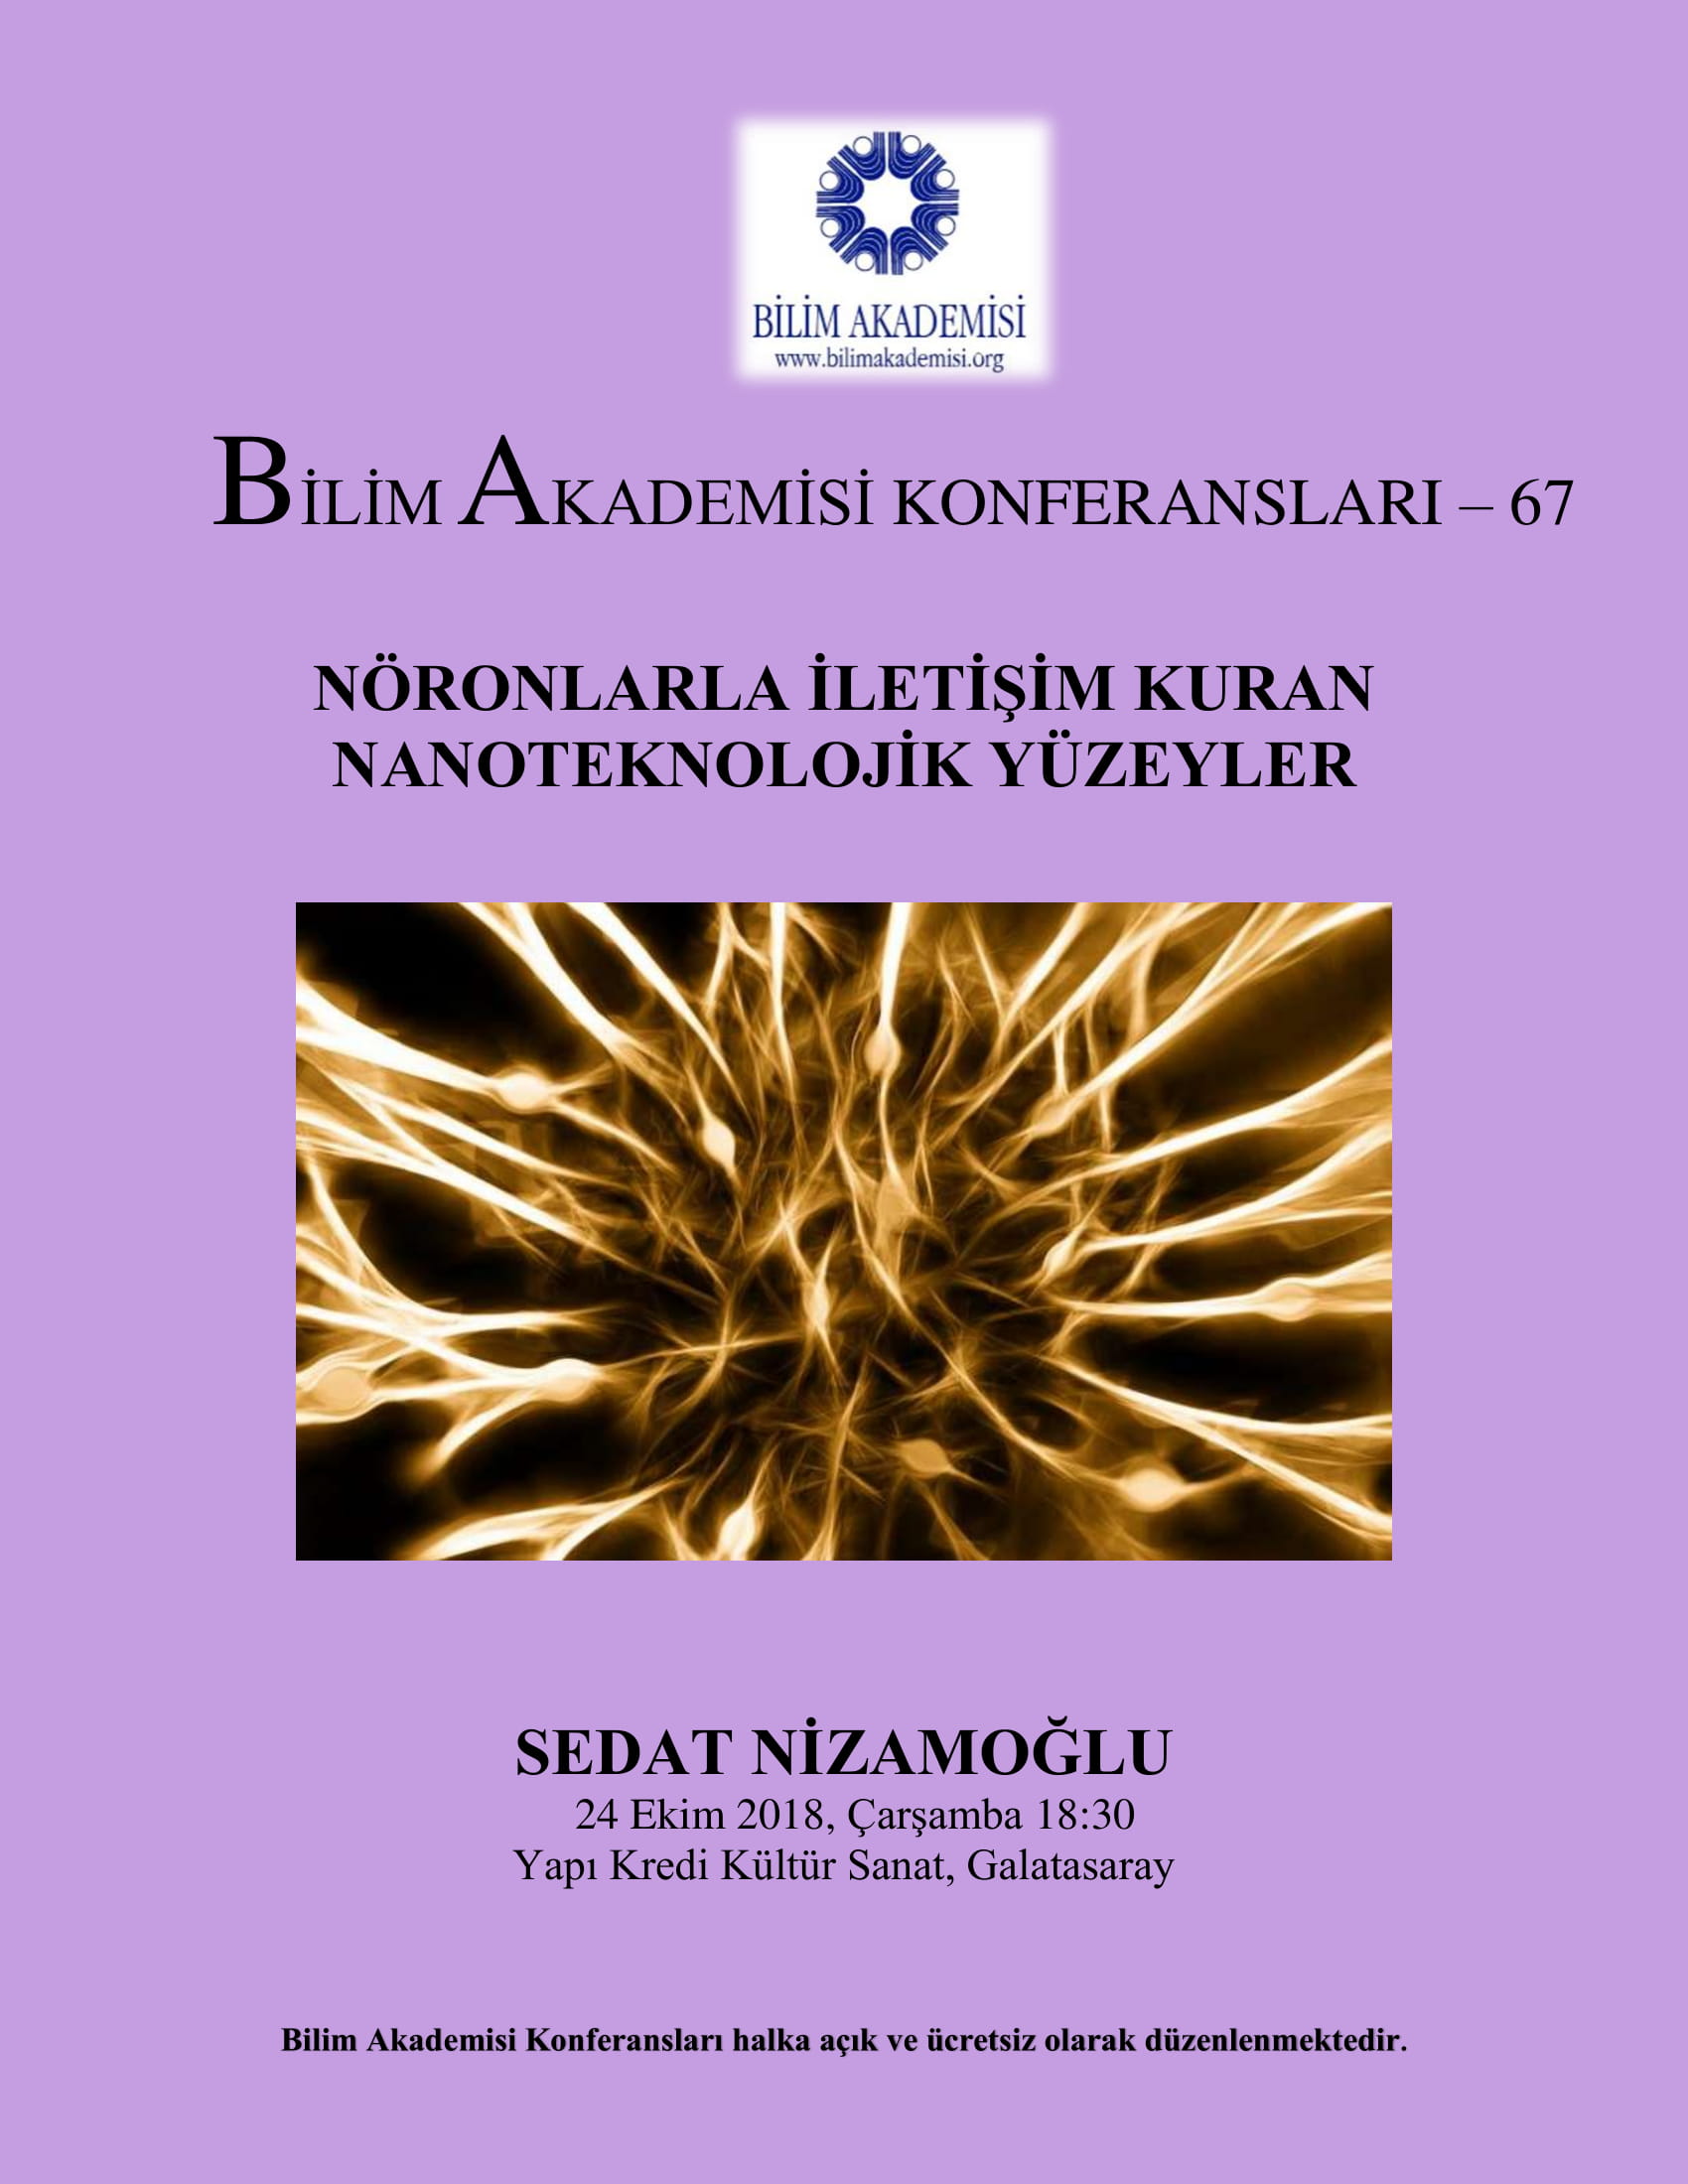 Nöronlarla İletişim Kuran Nanoteknolojik Yüzeyler - Konuşmacı : Sedat Nizamoğlu